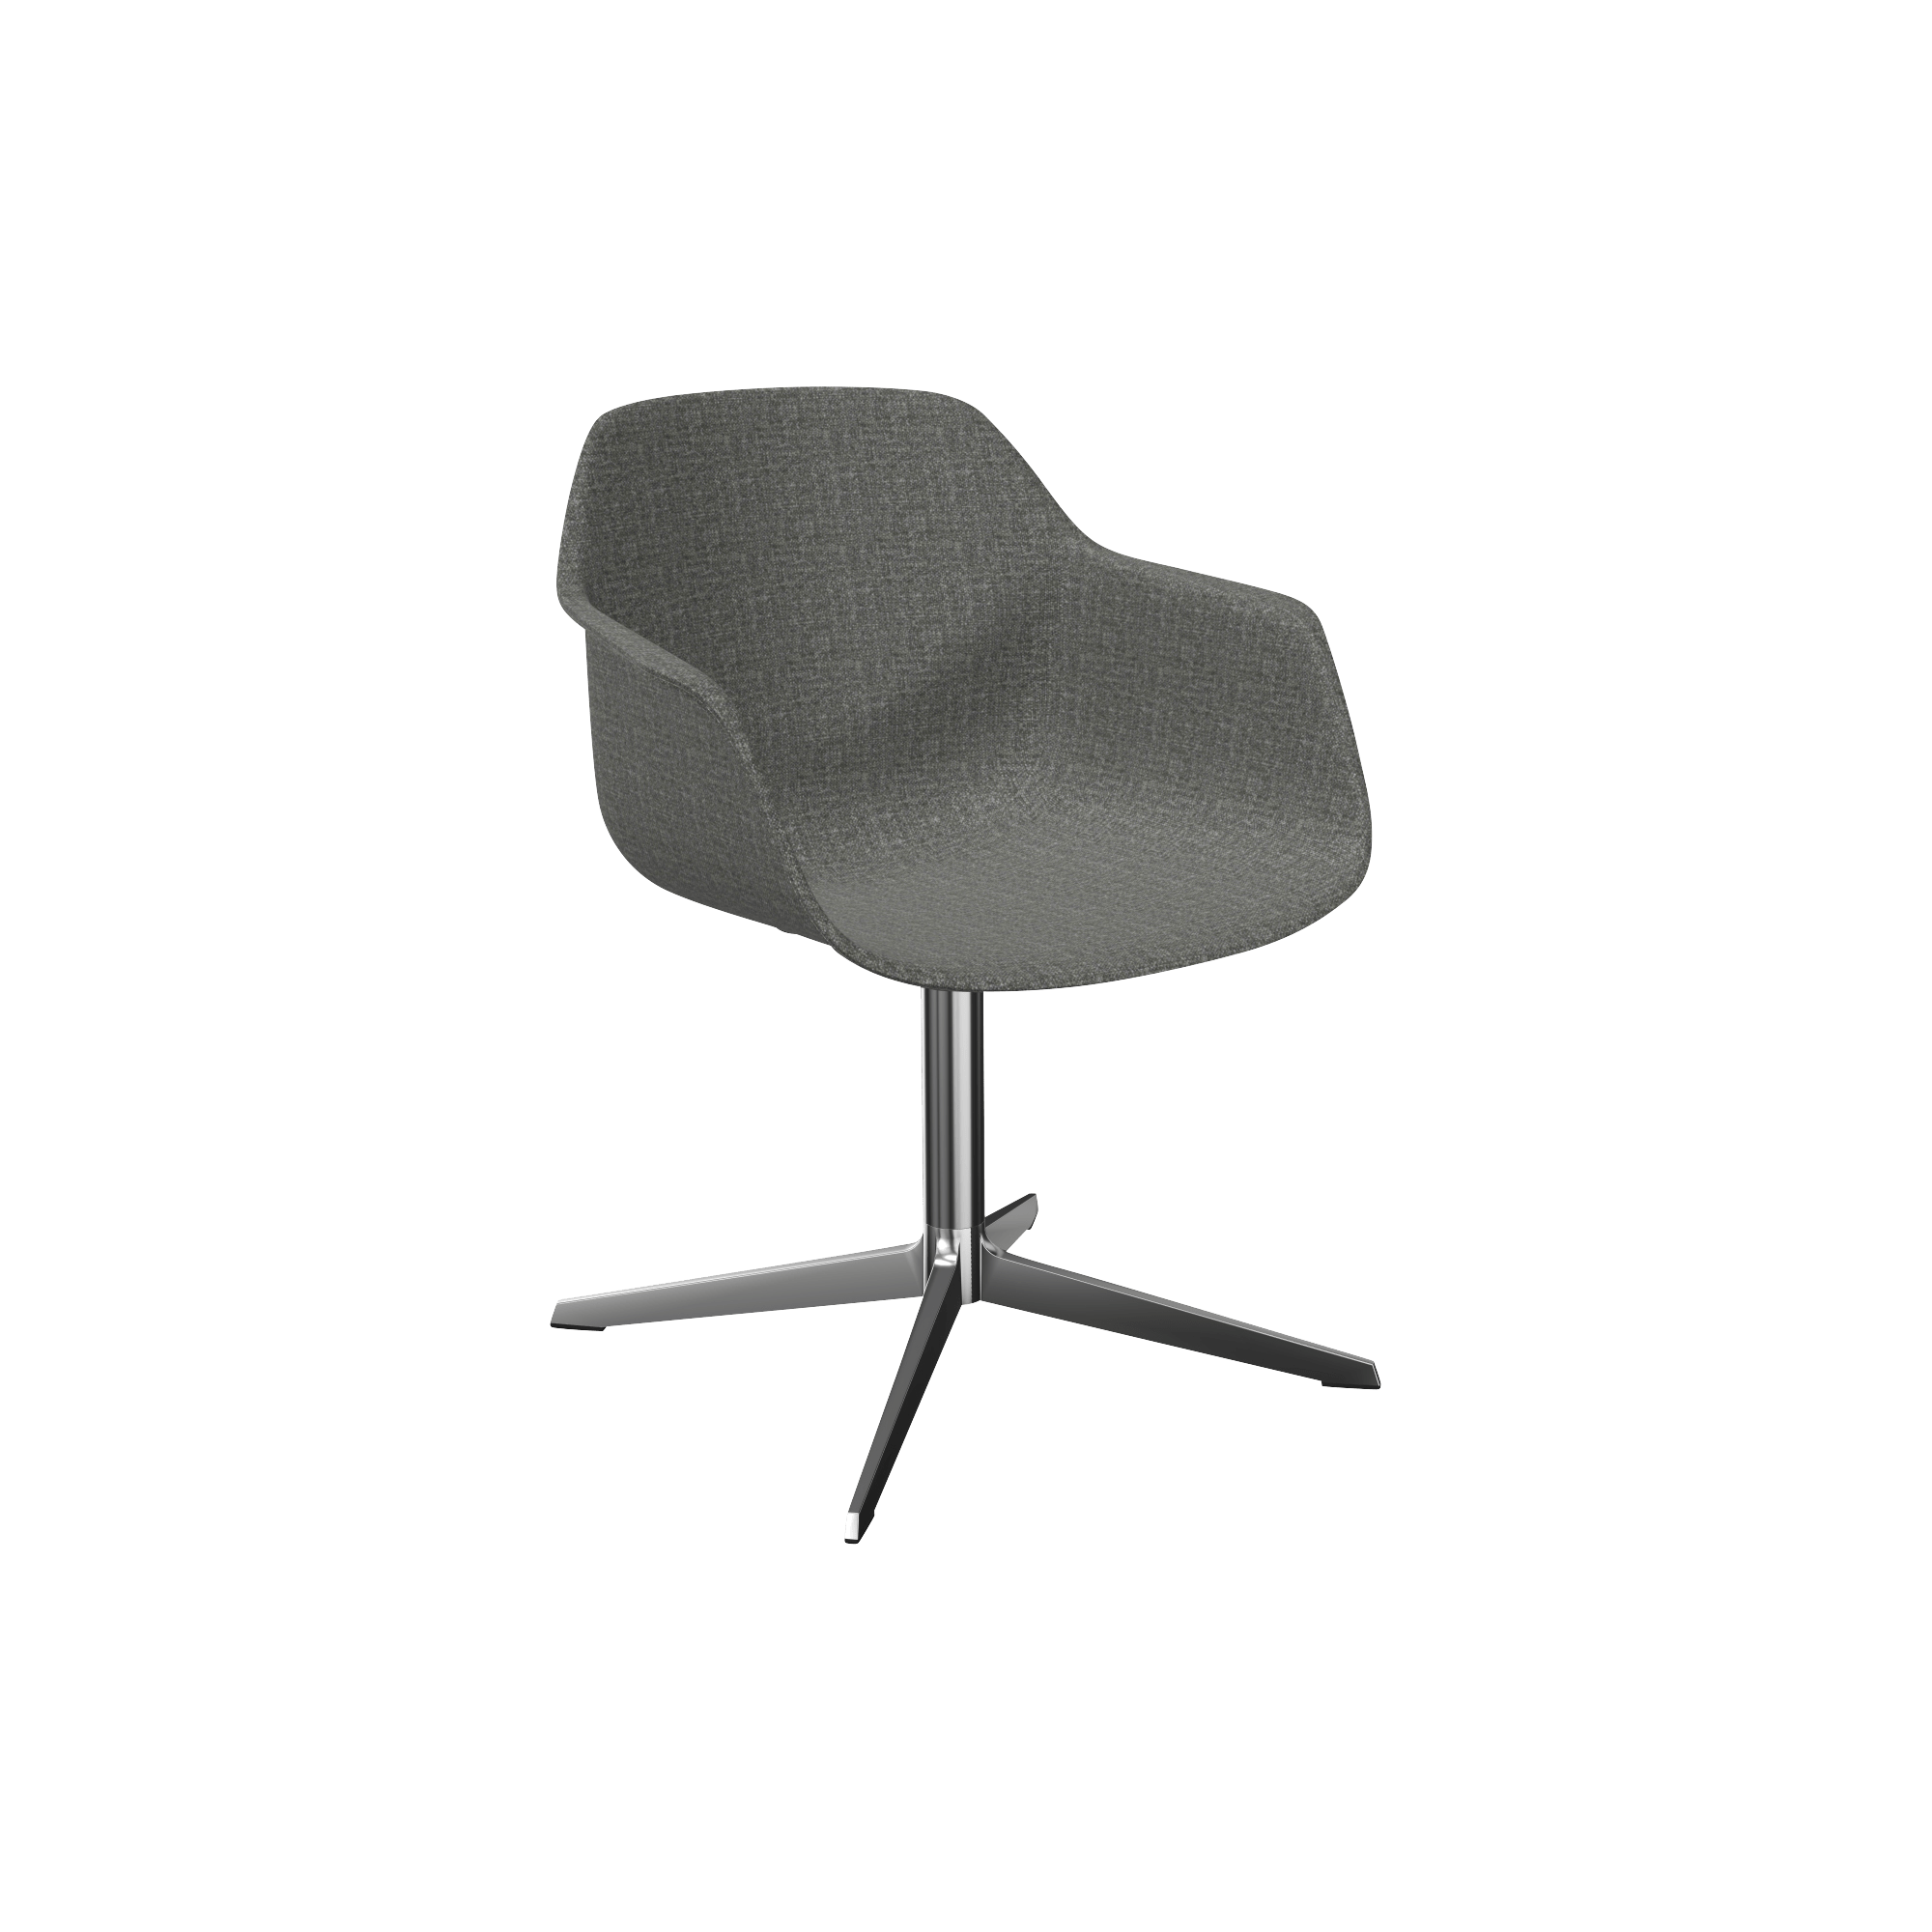 designer desk chair